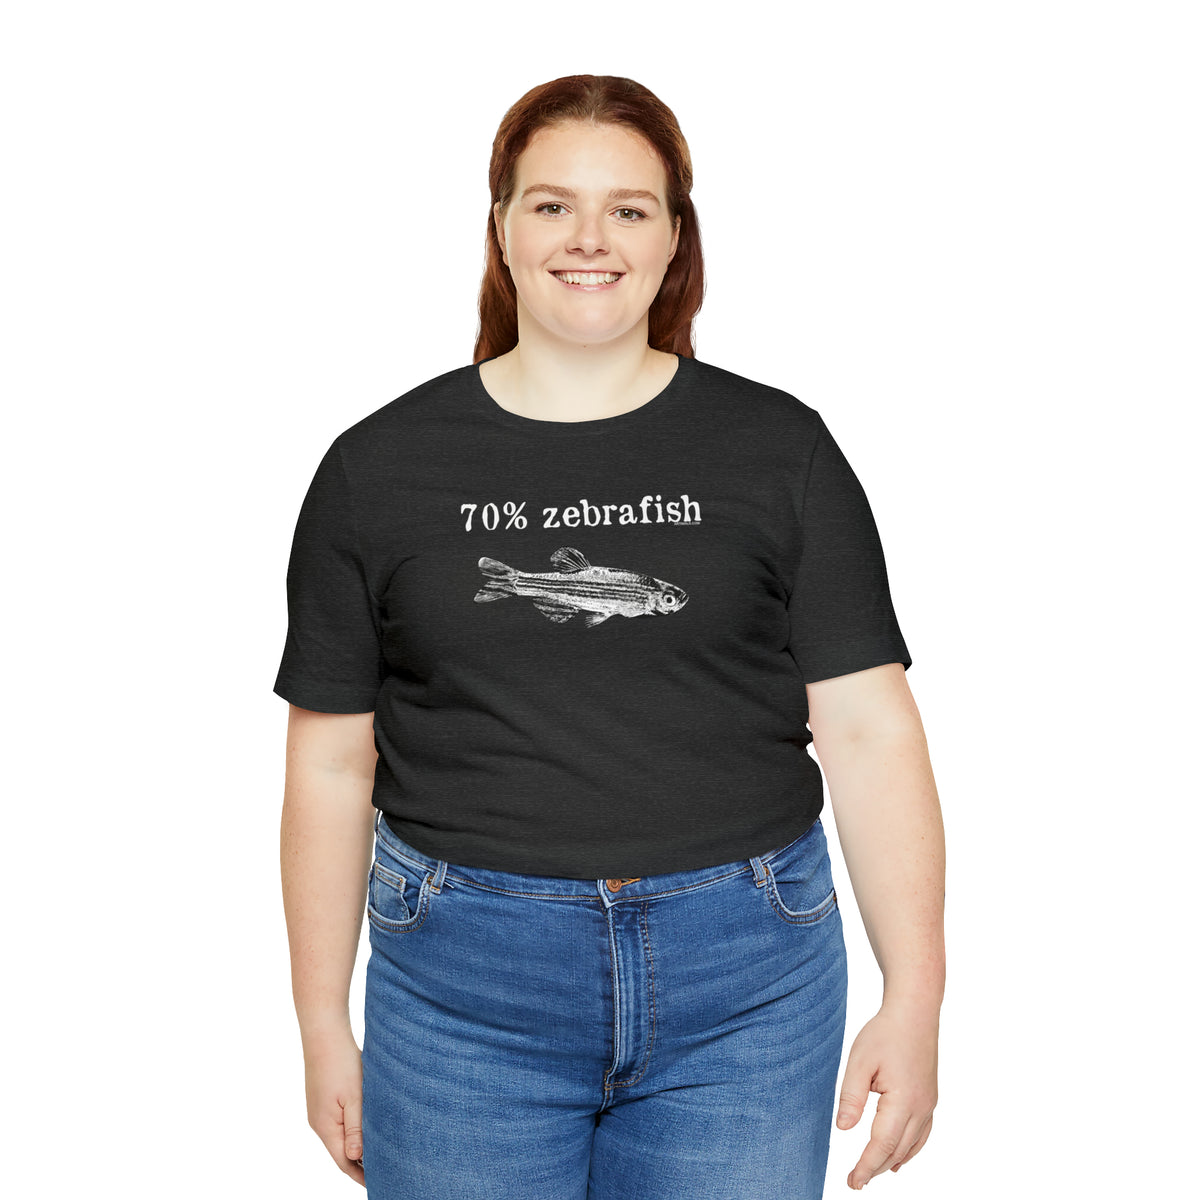 70% zebrafish unisex t-shirt